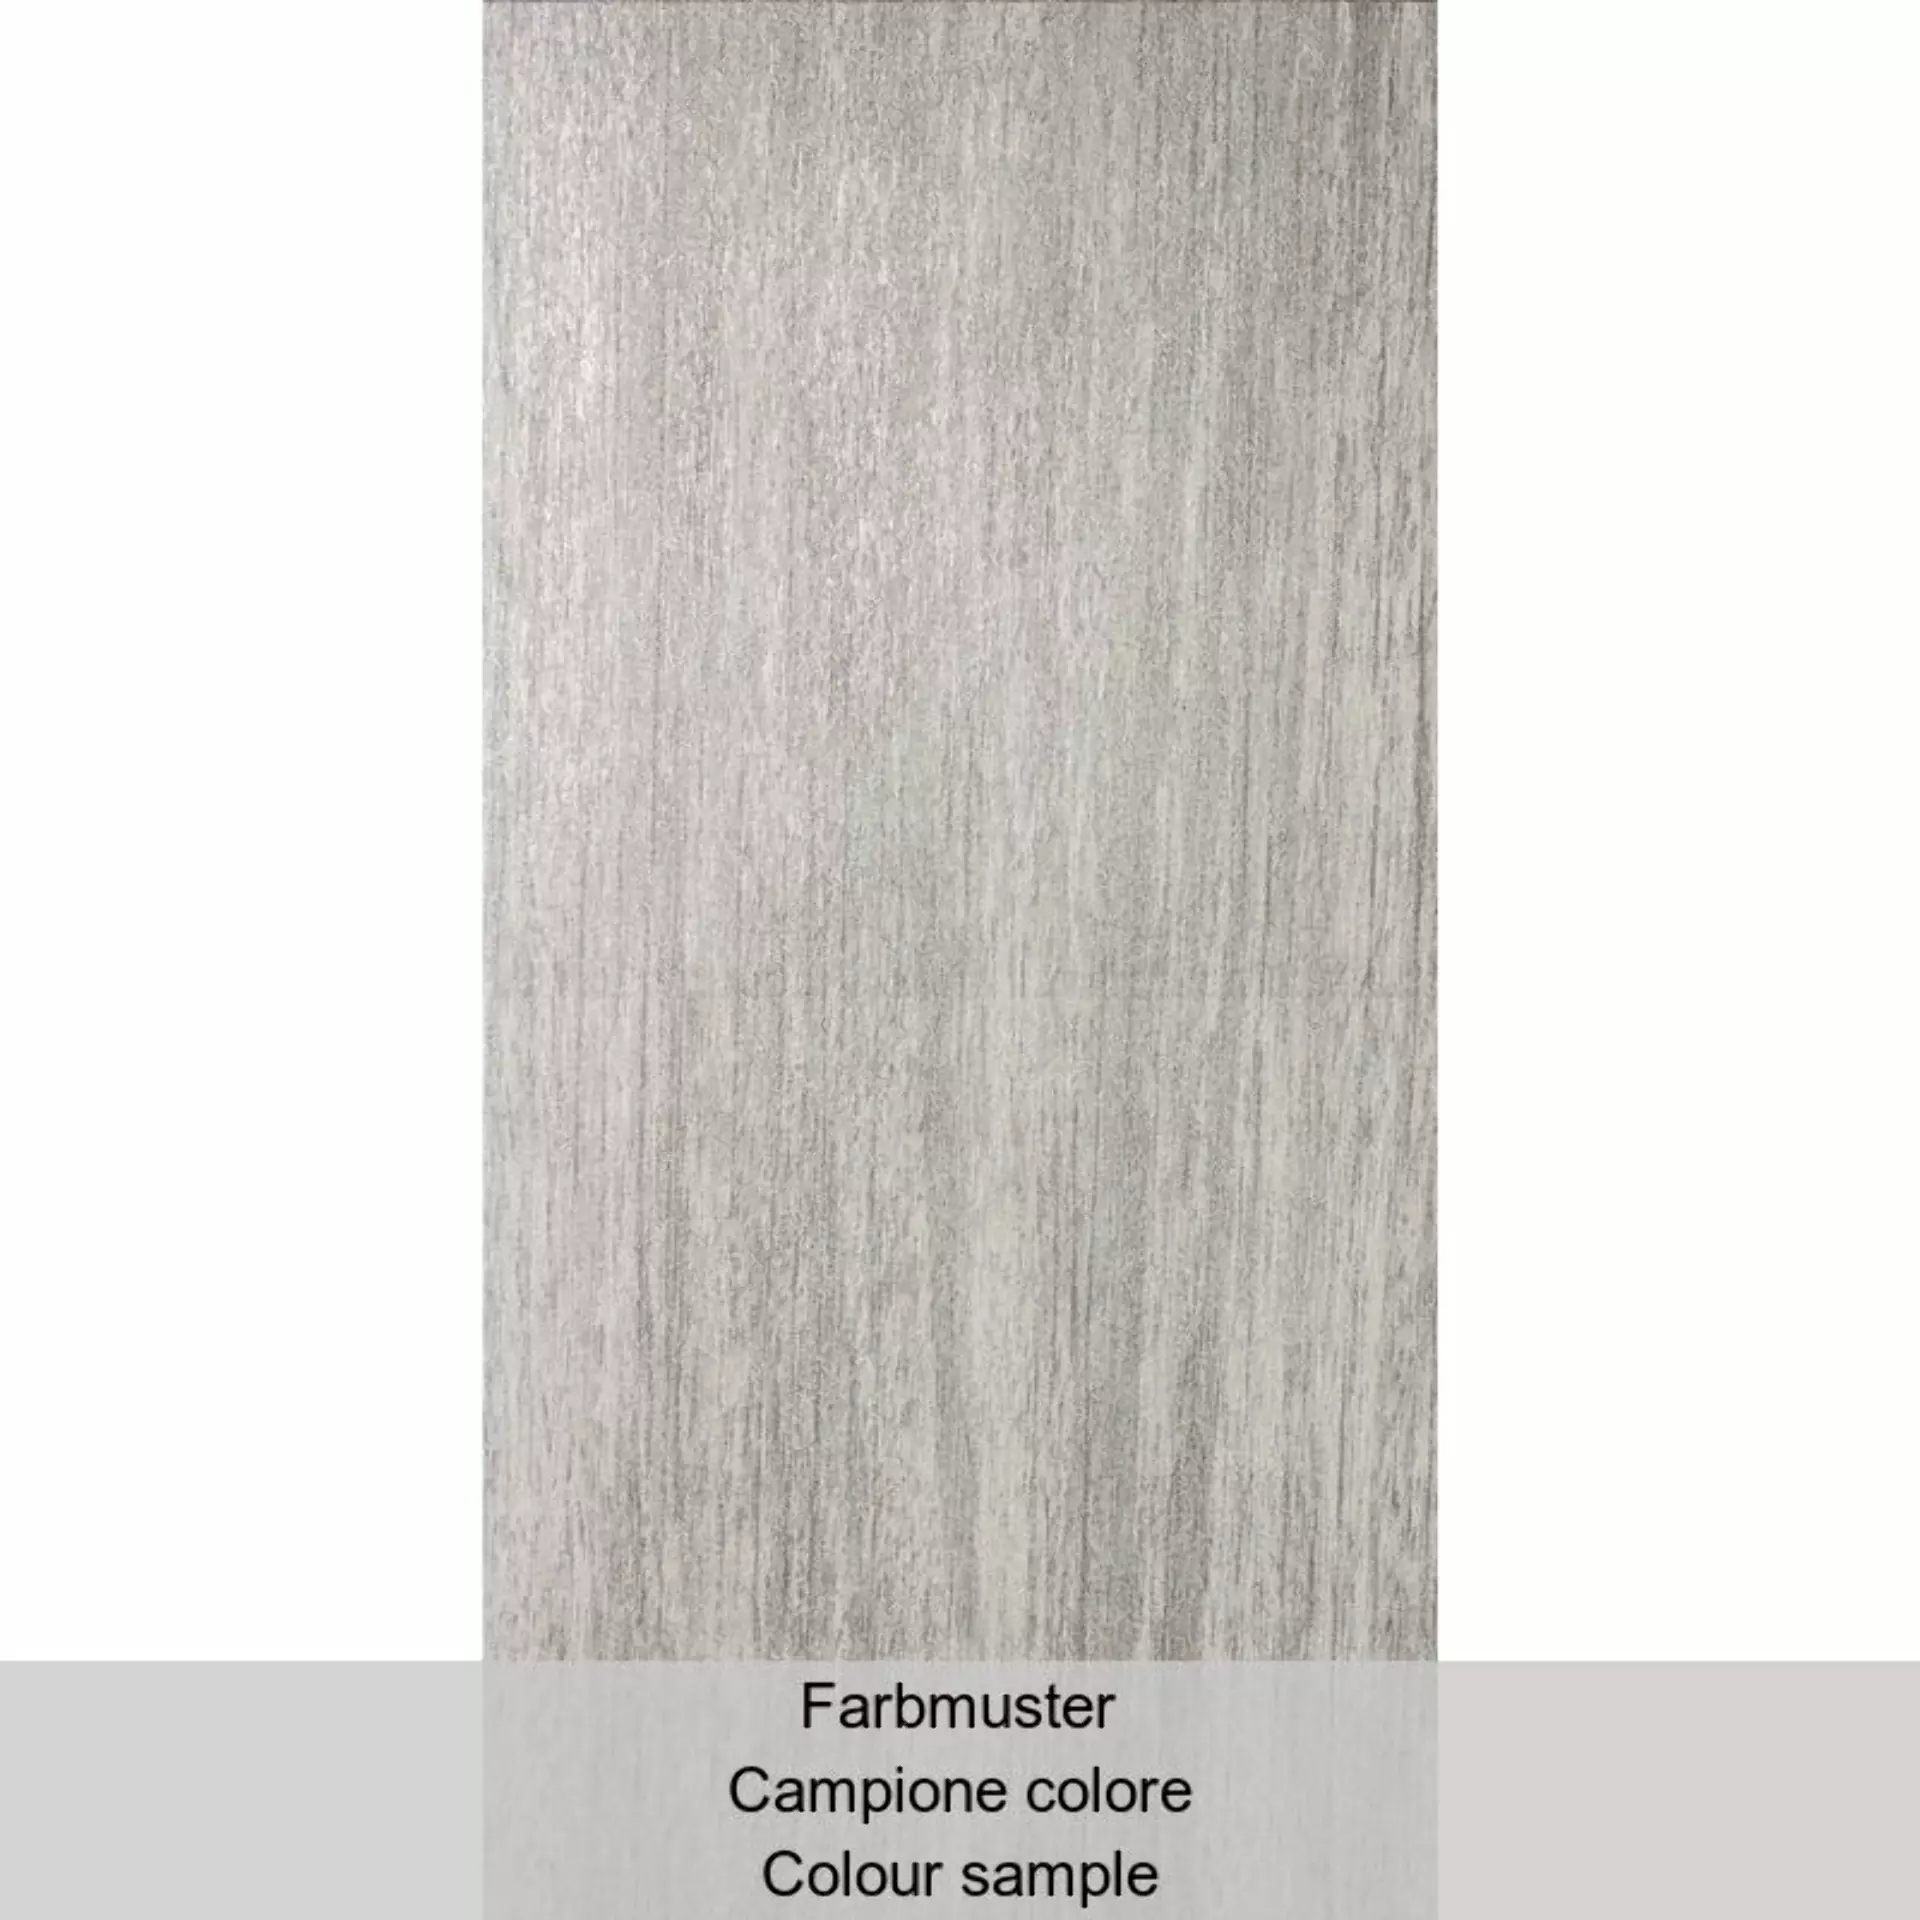 Casalgrande Metalwood Argento Naturale – Matt 7790095 30x60cm rectified 9mm